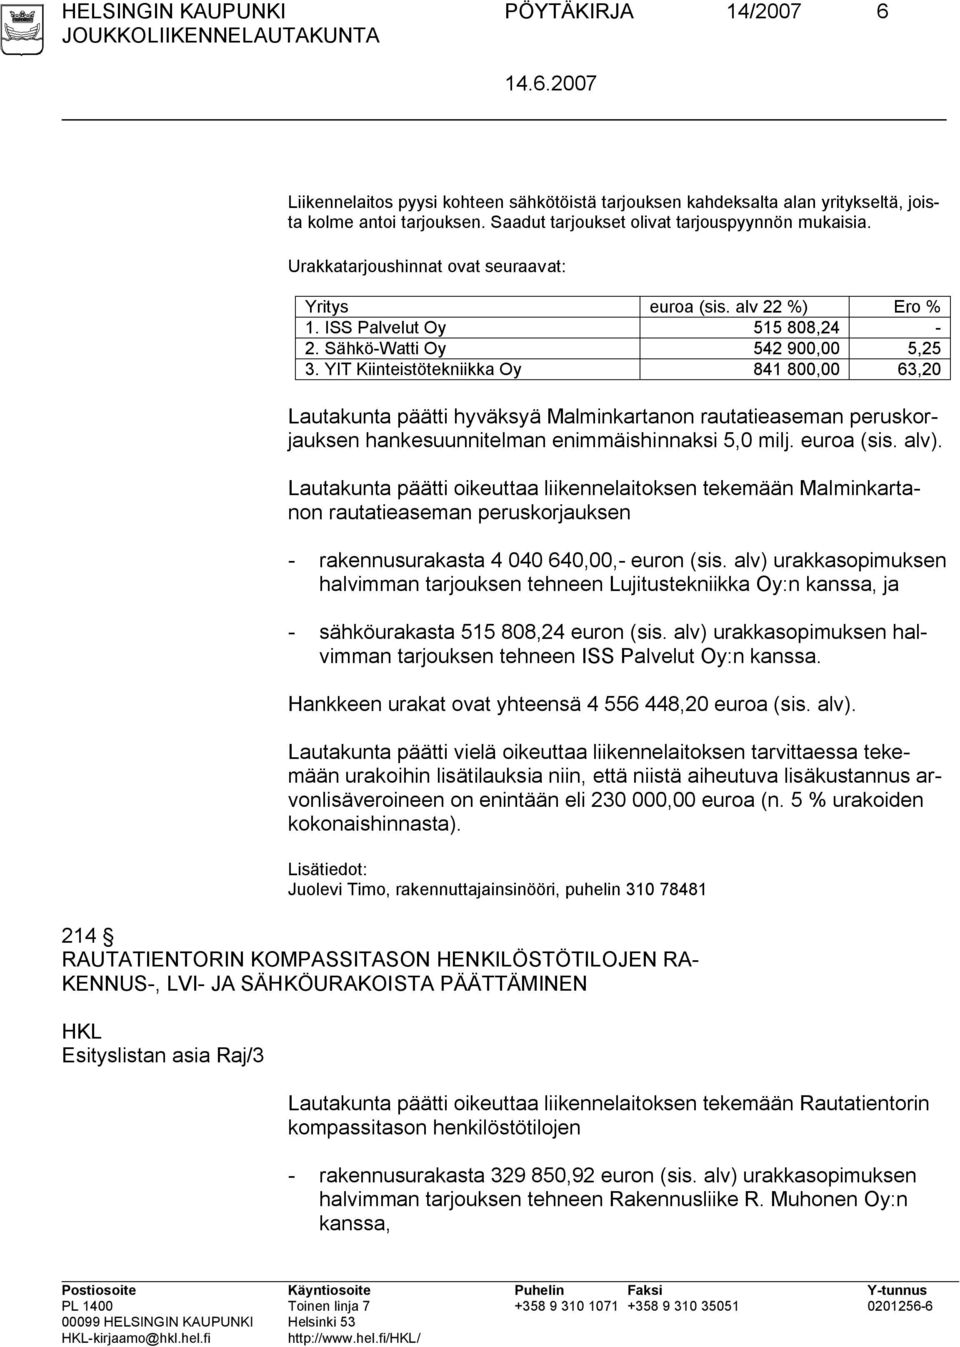 YIT Kiinteistötekniikka Oy 841 800,00 63,20 Lautakunta päätti hyväksyä Malminkartanon rautatieaseman peruskorjauksen hankesuunnitelman enimmäishinnaksi 5,0 milj. euroa (sis. alv).